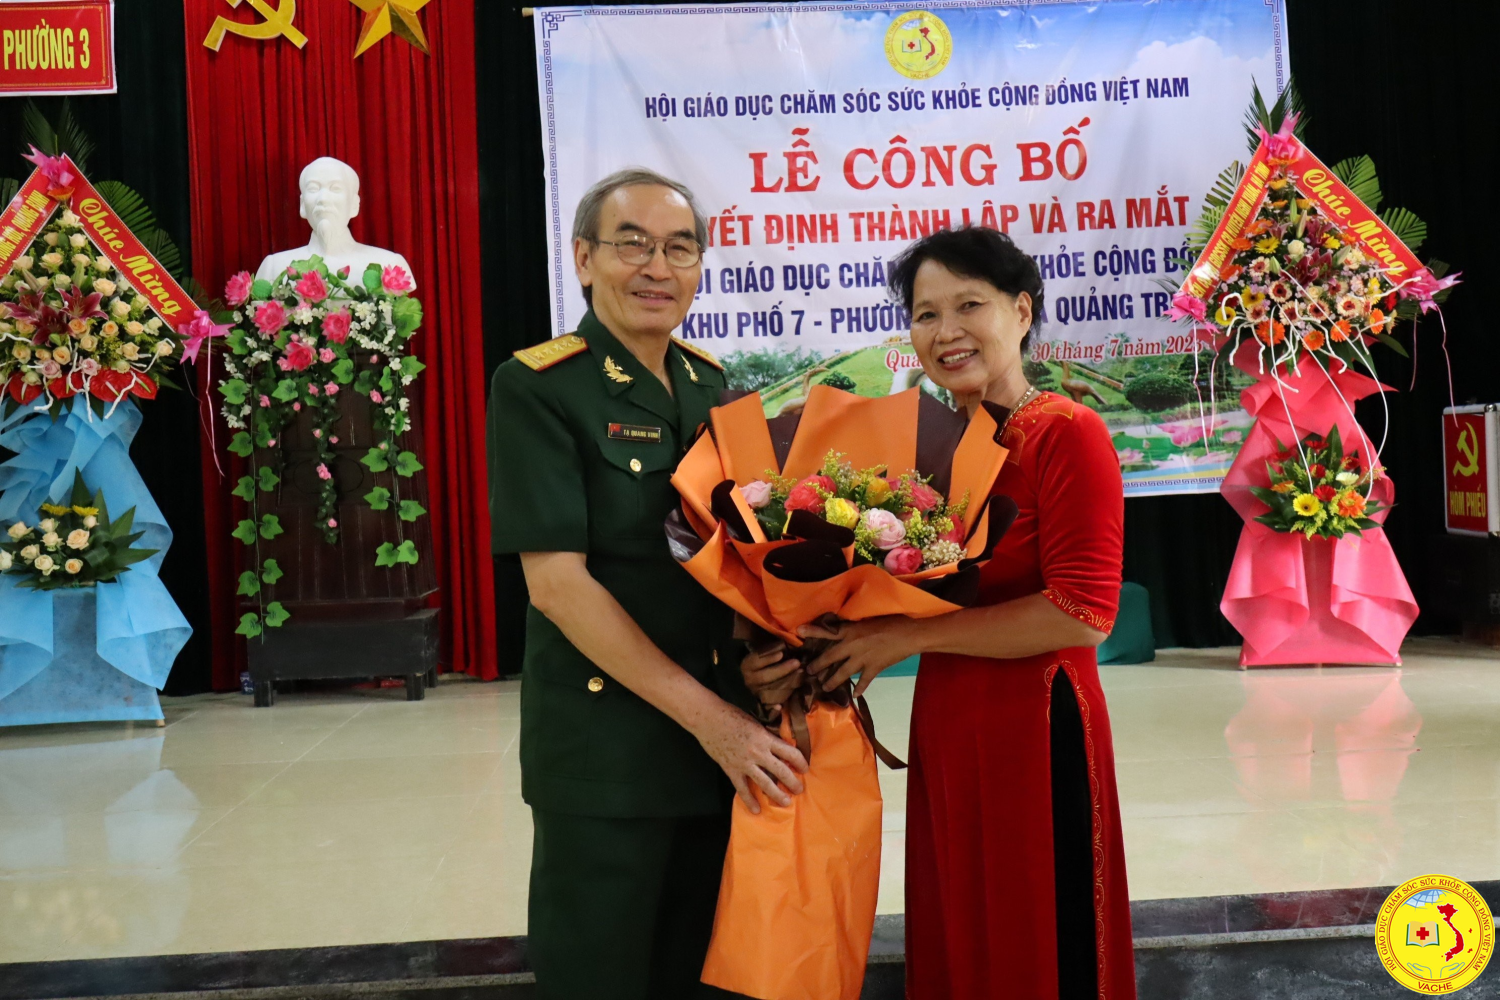 Thành lập Chi hội Giáo dục CSSKCĐ khu phố 7, phường 3  thị xã Quảng Trị, tỉnh Quảng Trị